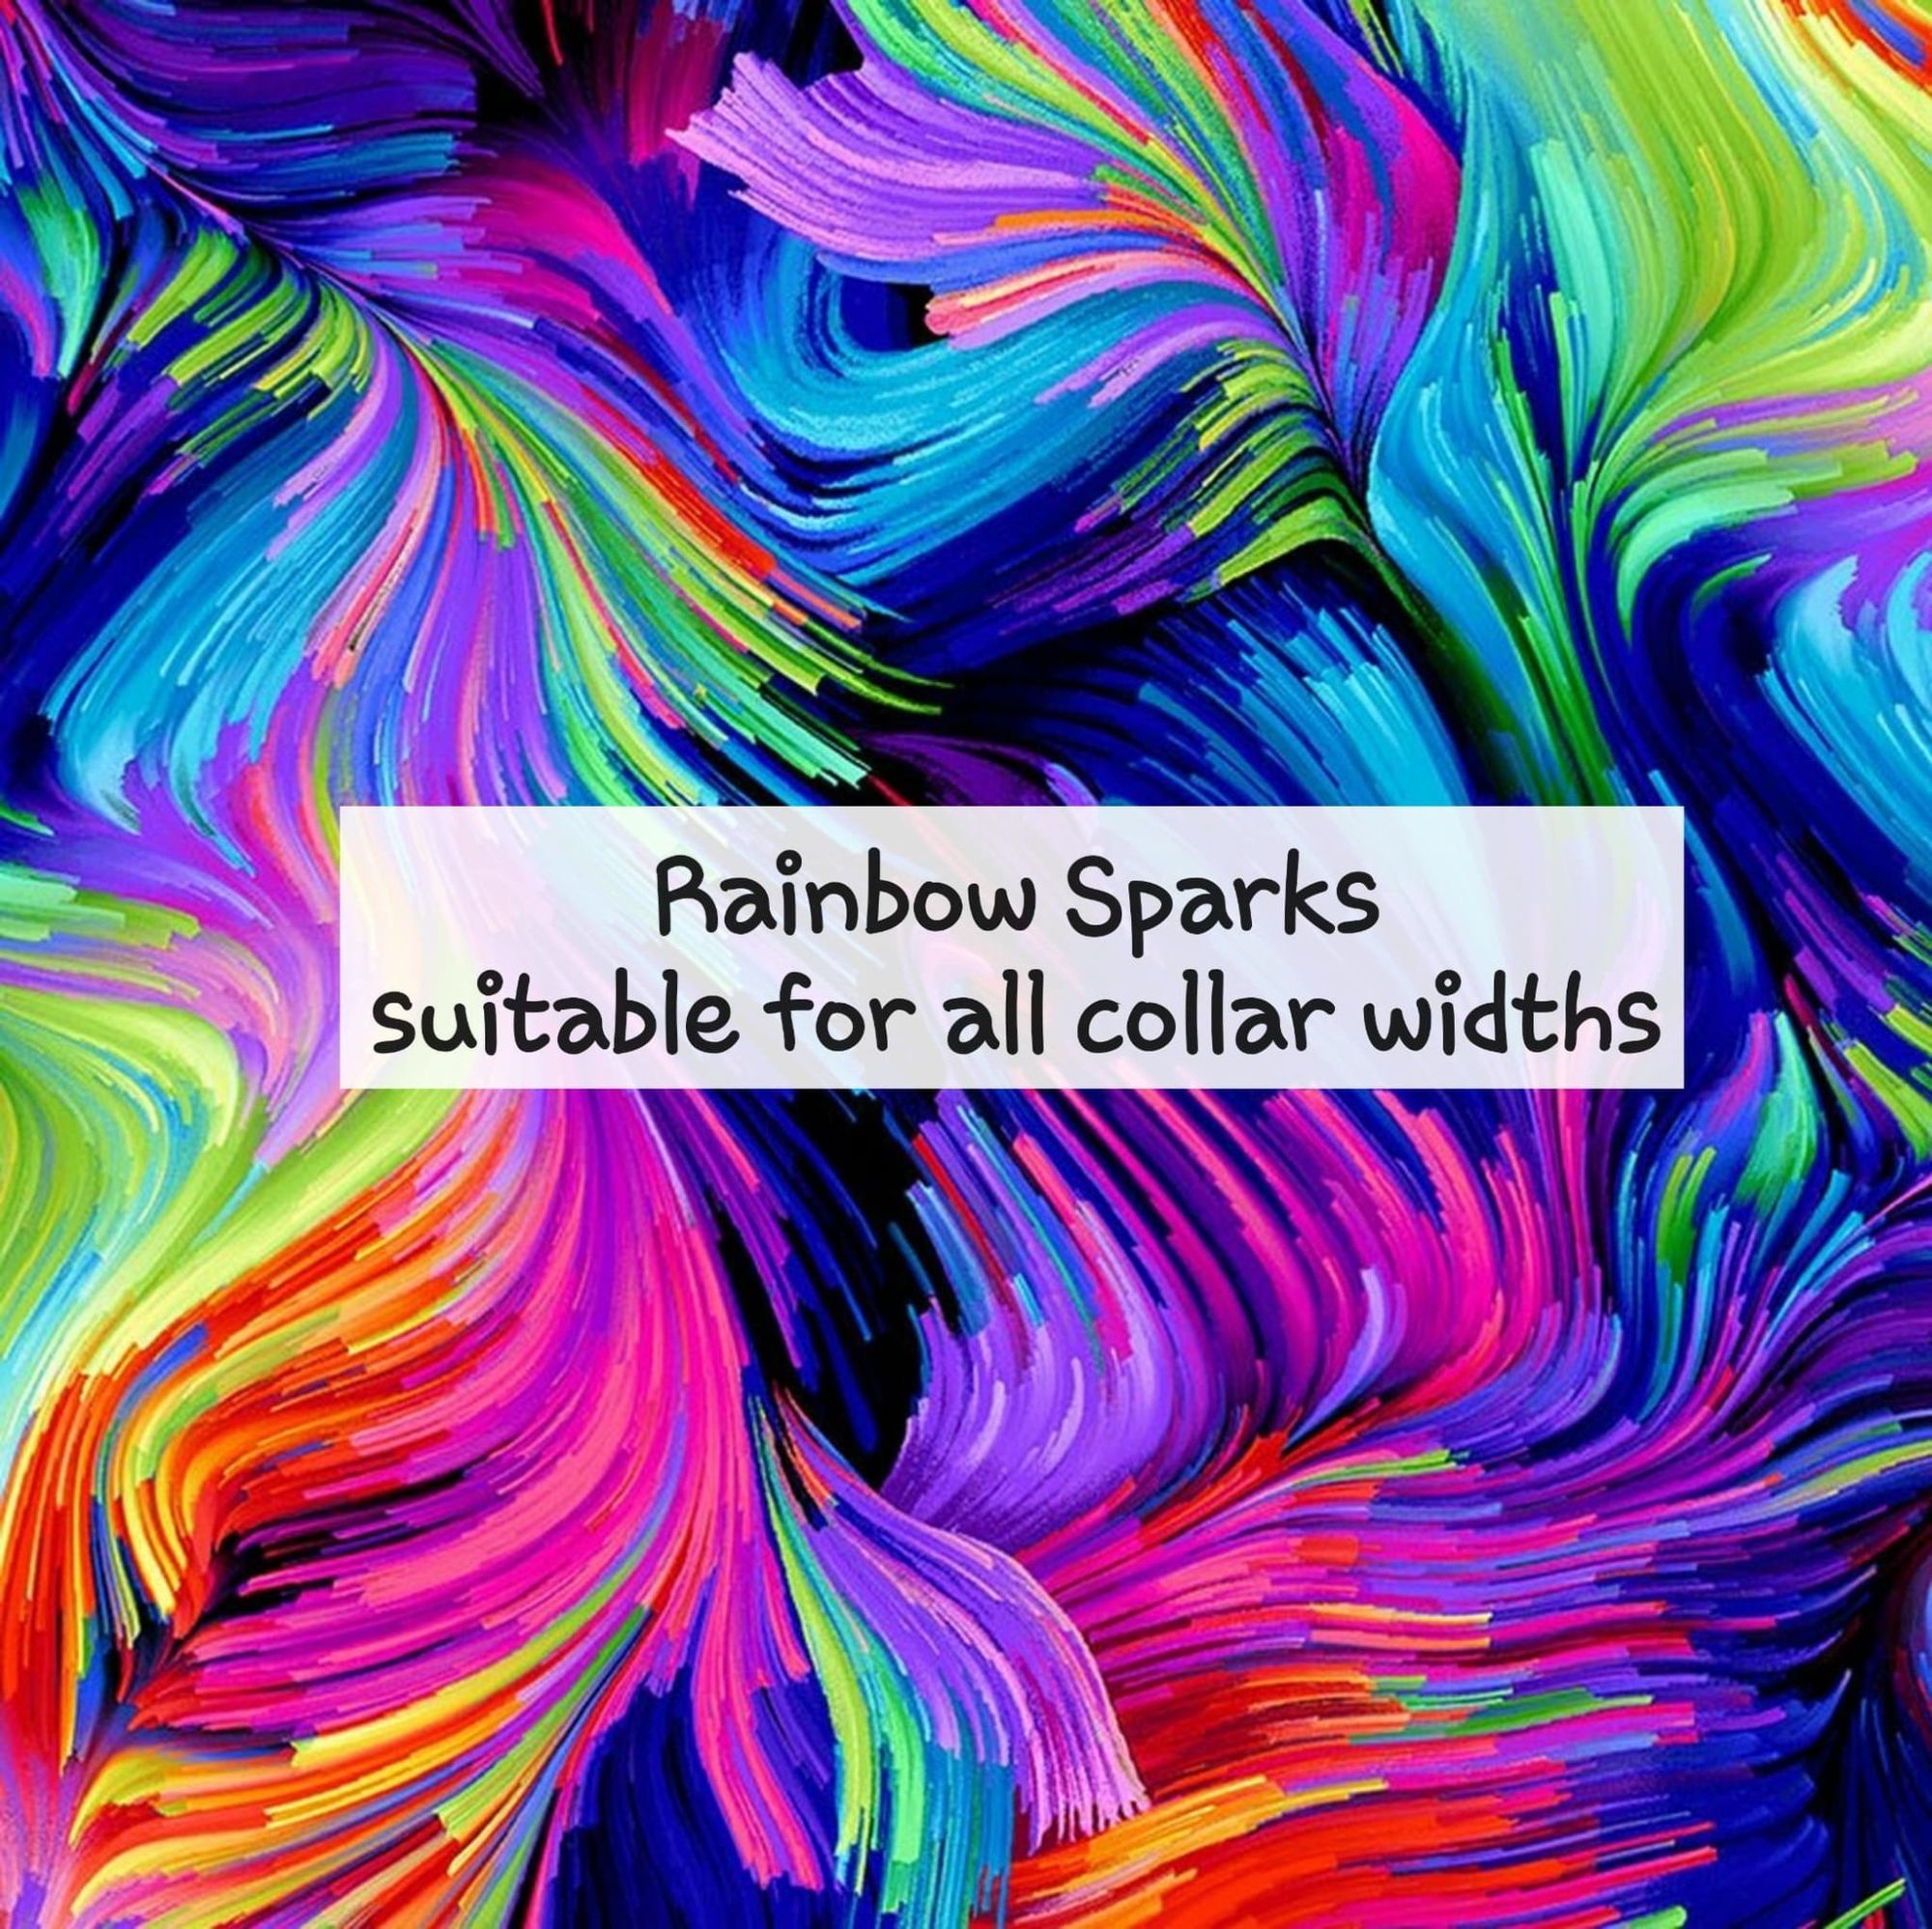 Rainbow Sparks